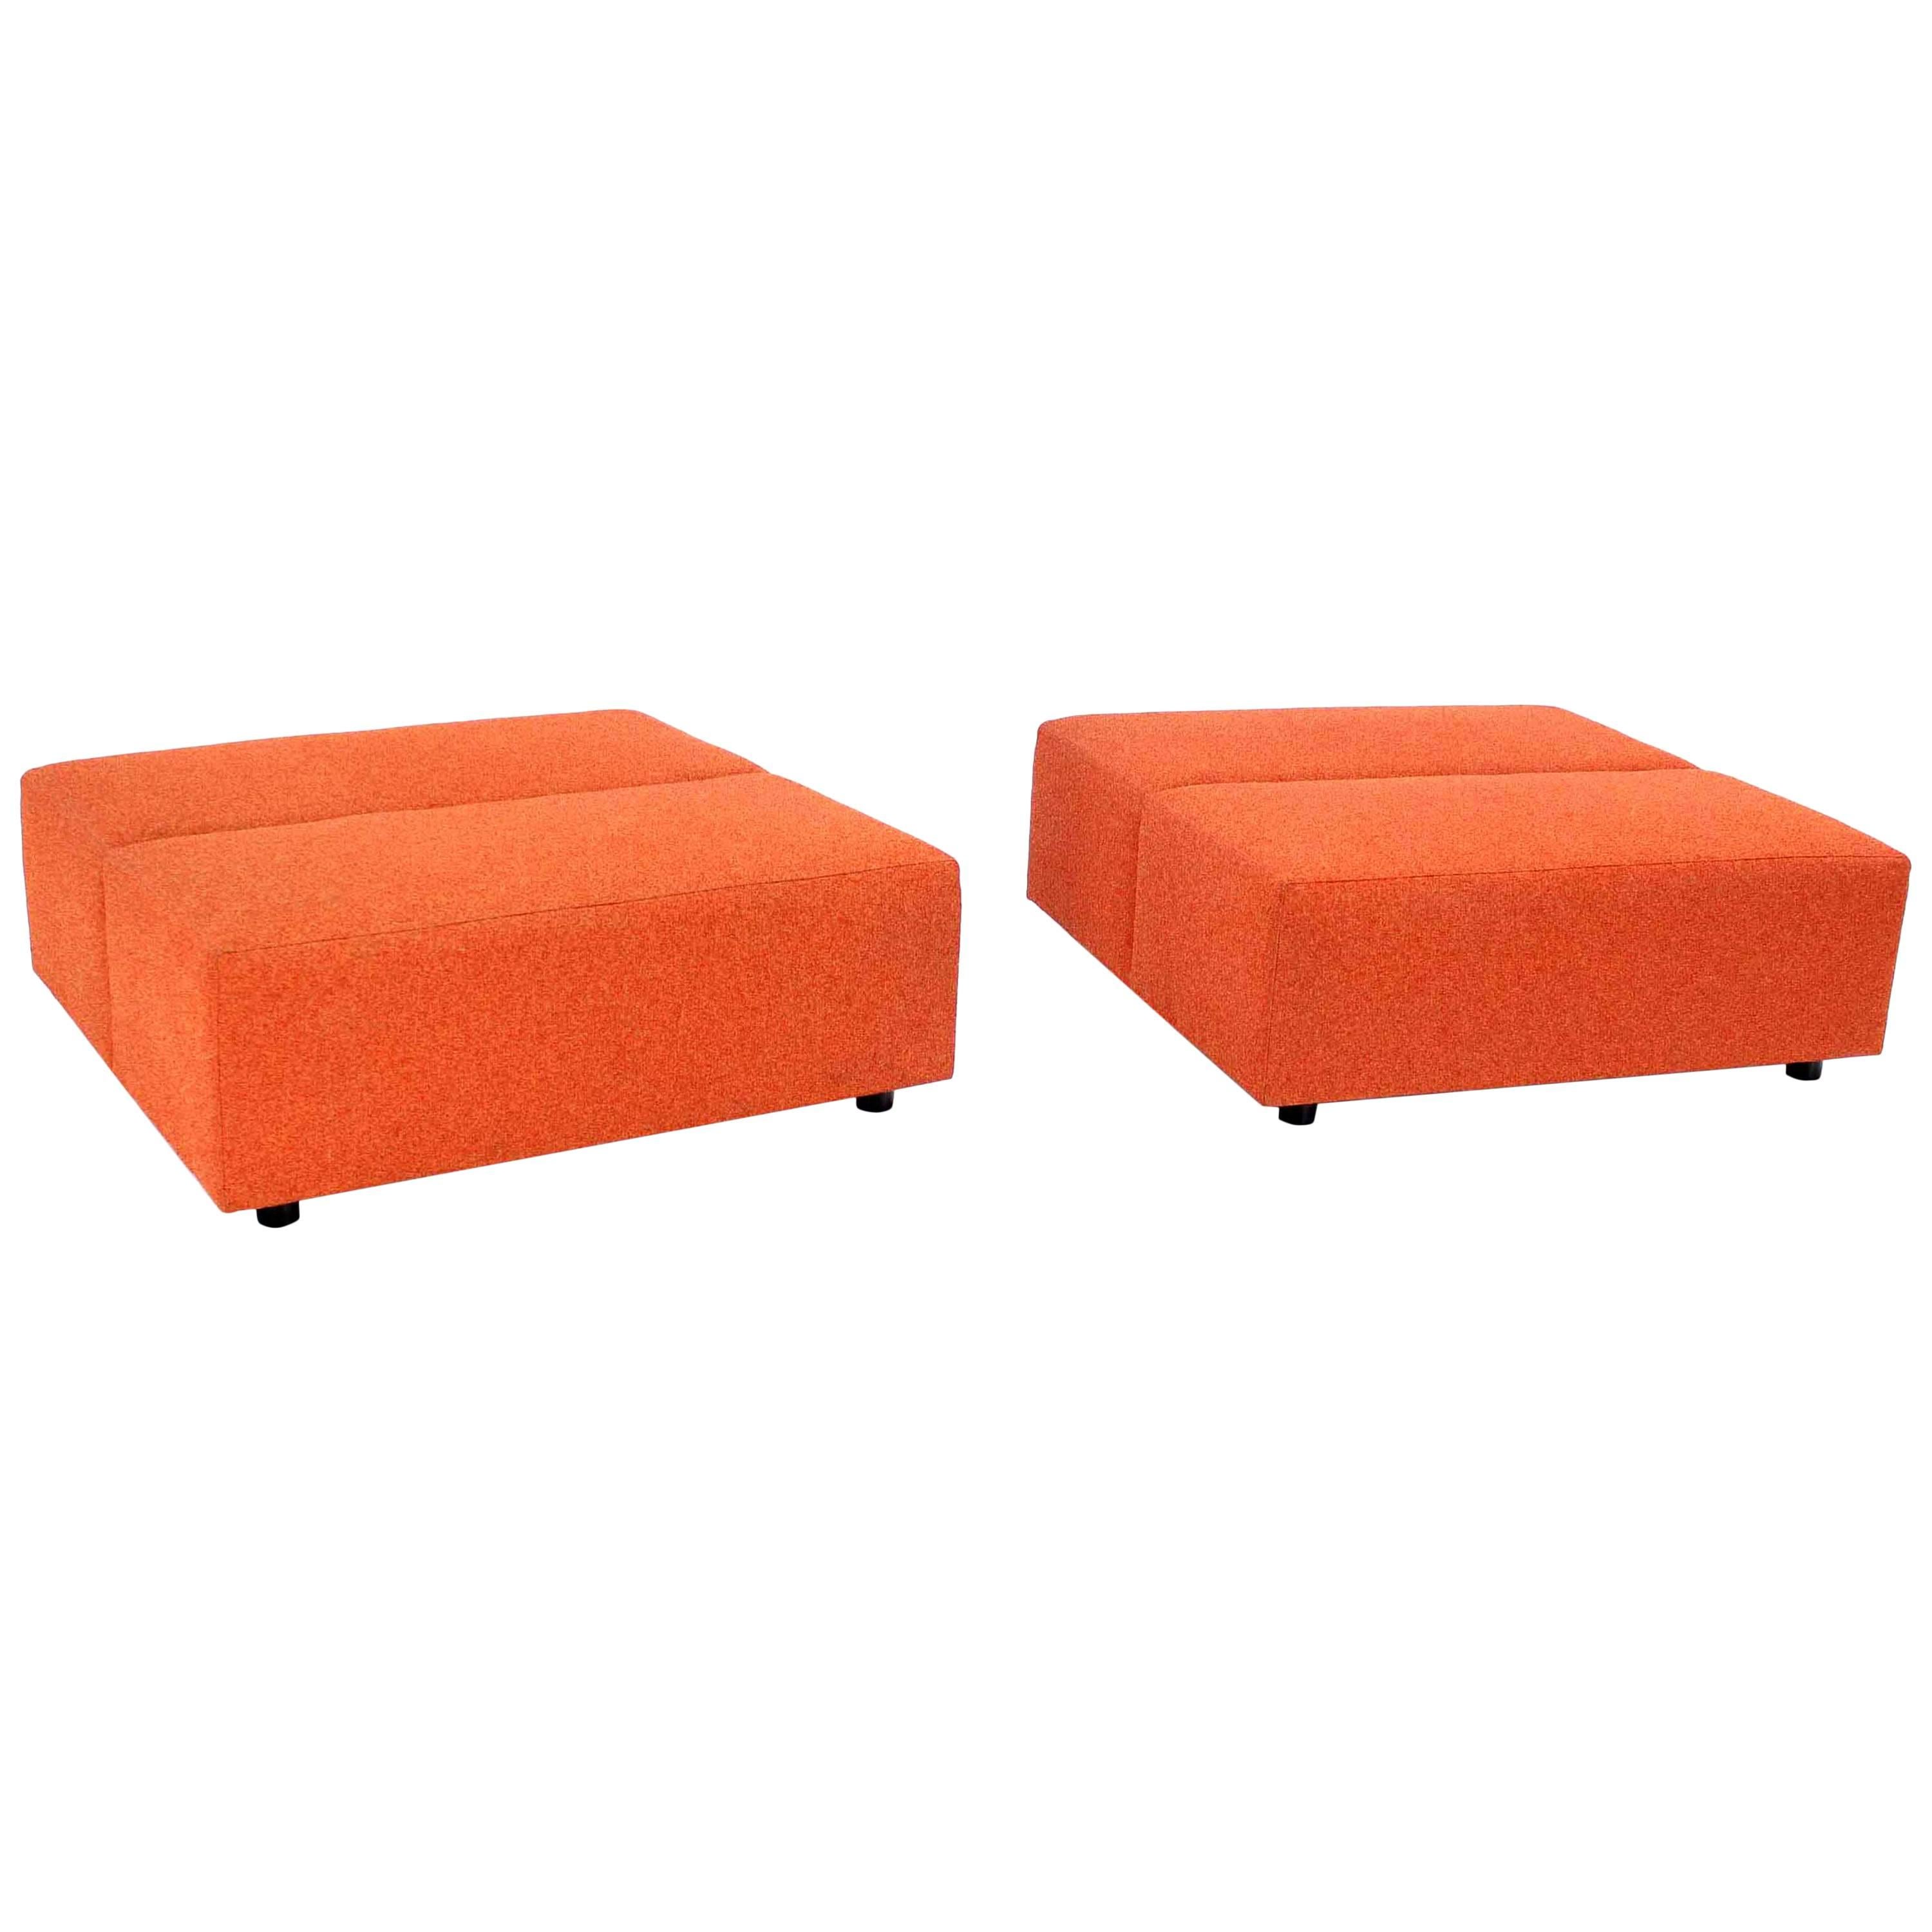 Paire de grands bancs carrés surdimensionnés en tapisserie orange 4x4 par Steelcase Sofa